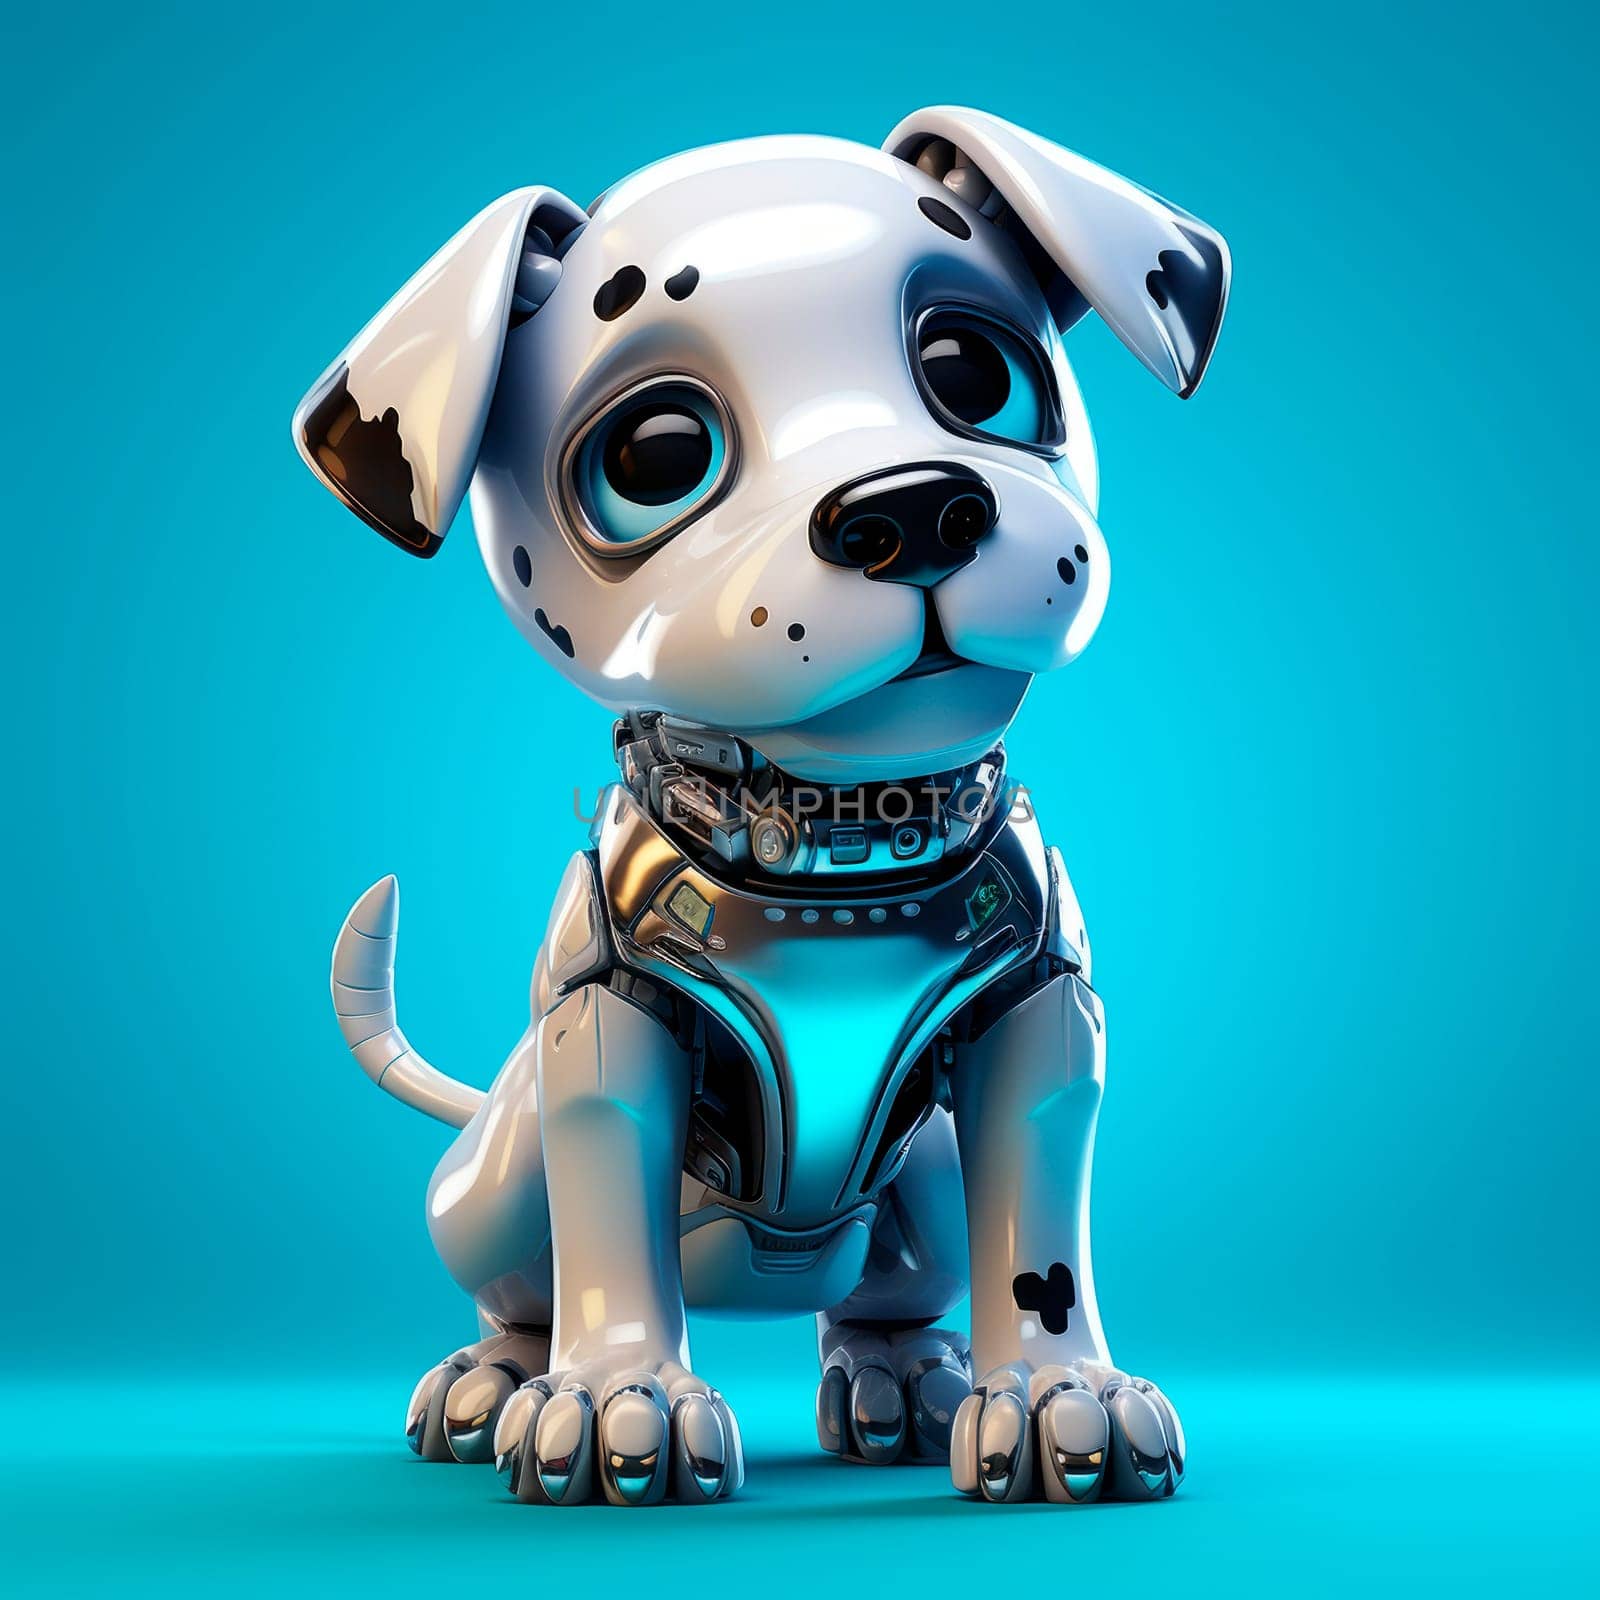 Toy robot dog on a blue background by Spirina